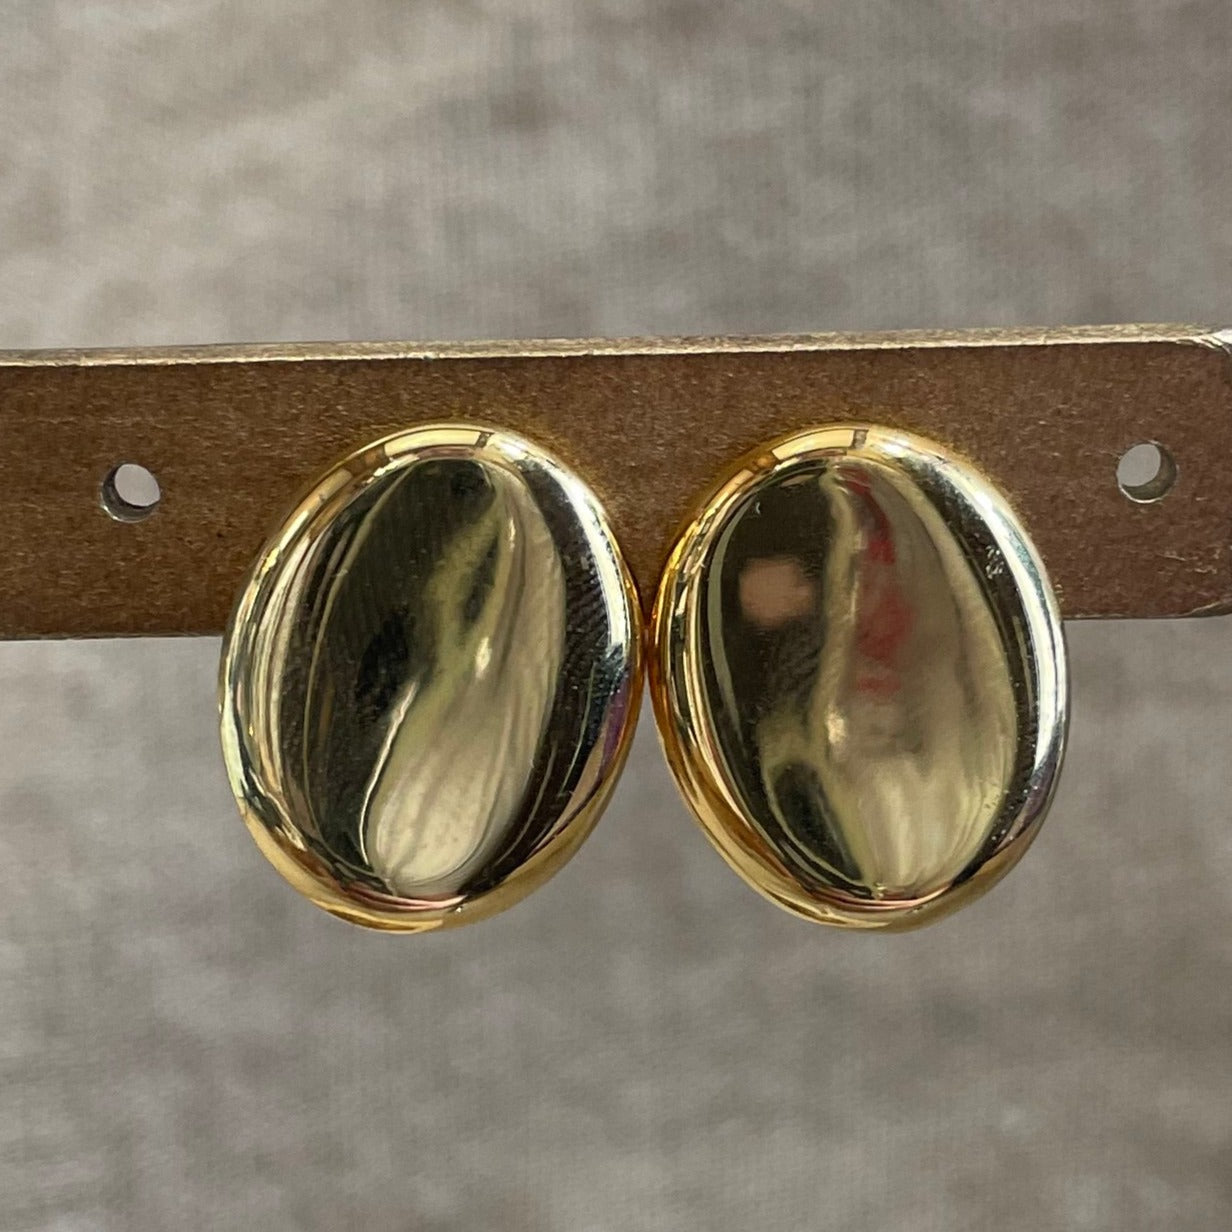 Minimalist Oval Earrings